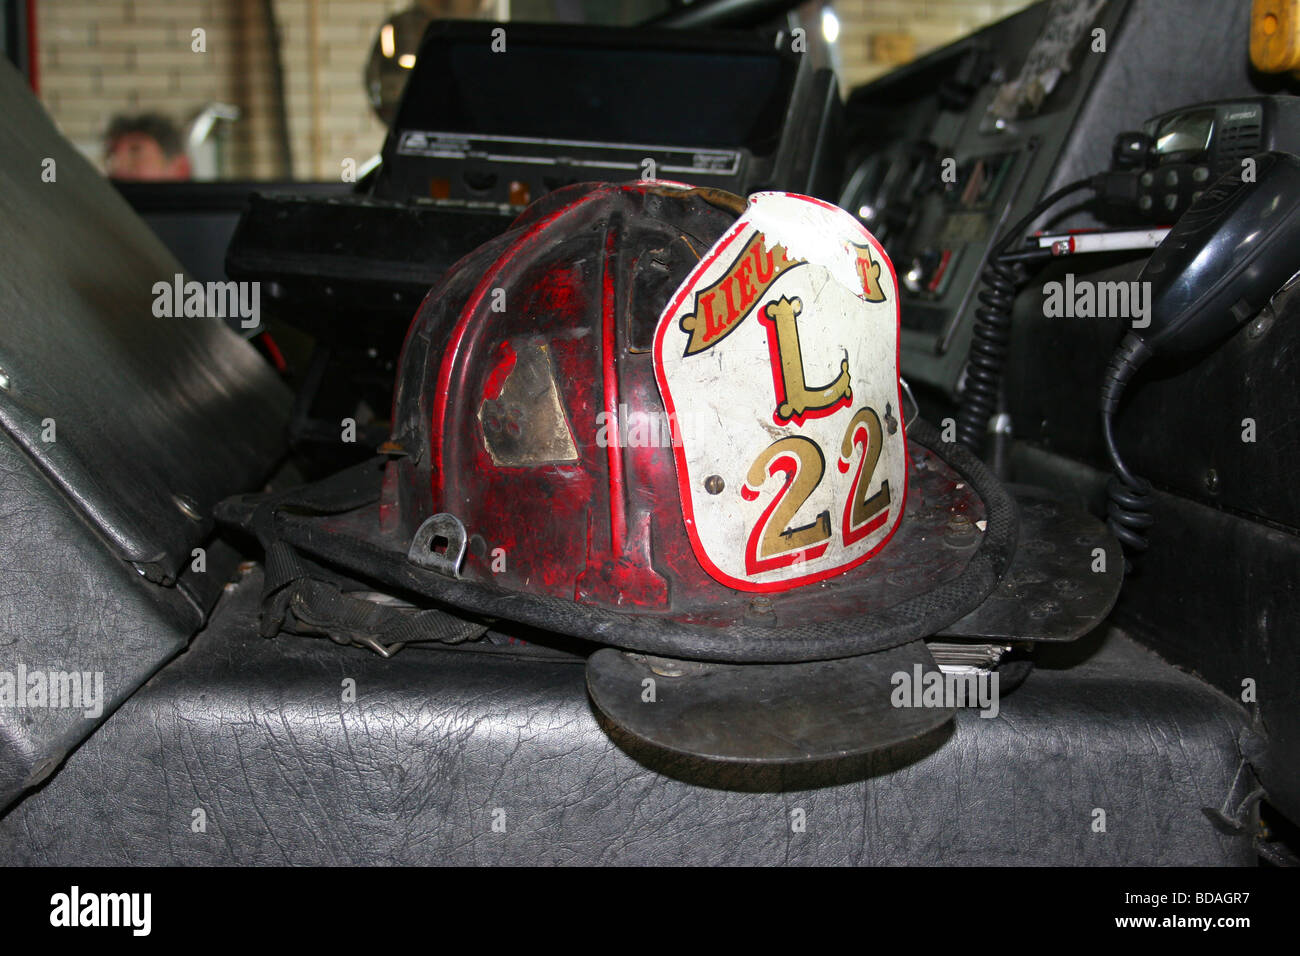 Fire Department helmet Ladder 22, Detroit Fire Department, Detroit Michigan USA Stock Photo